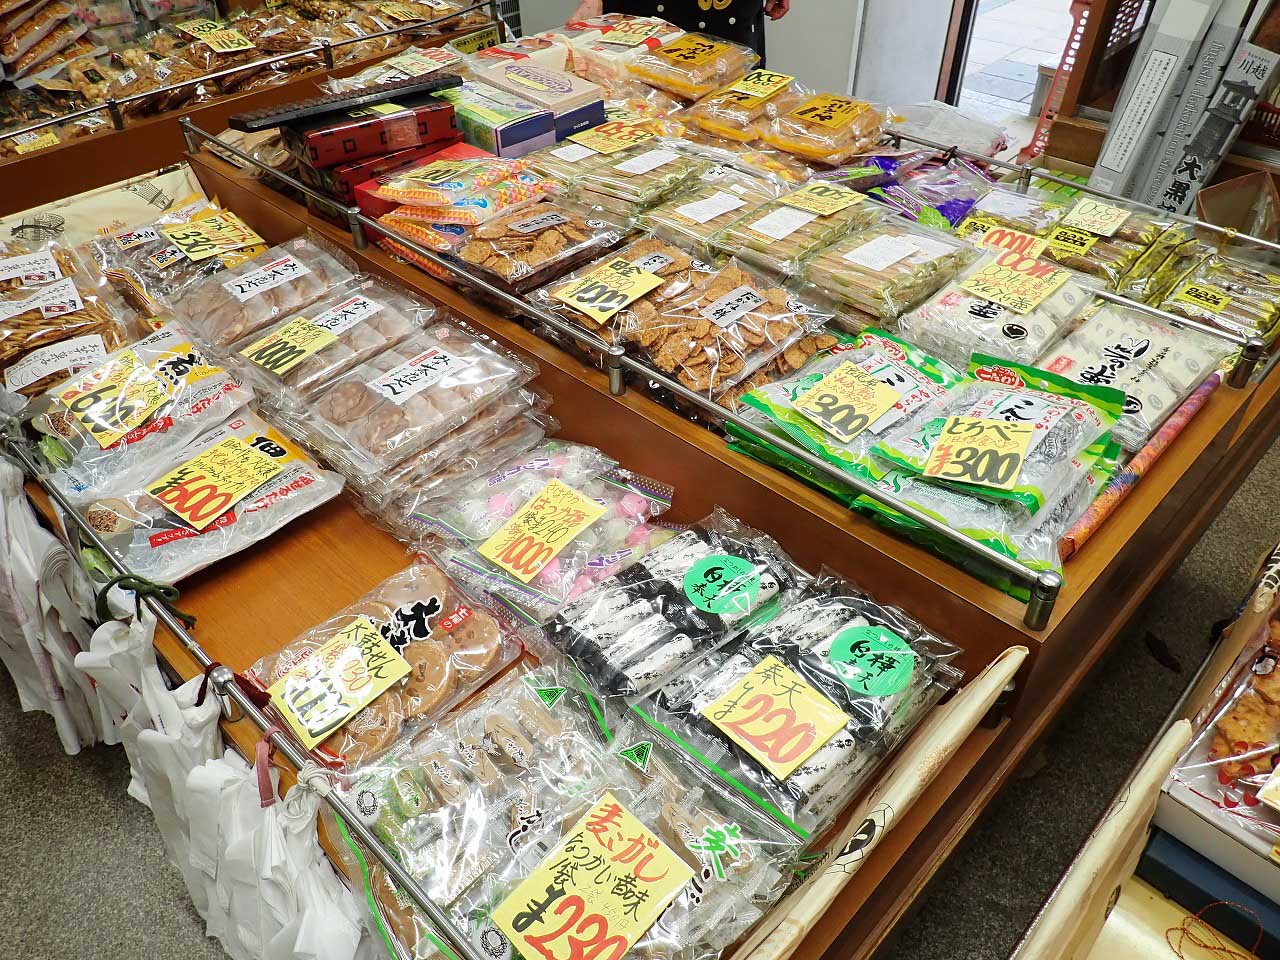 70年以上の歴史がある川越のお菓子屋さん『松屋菓子店』